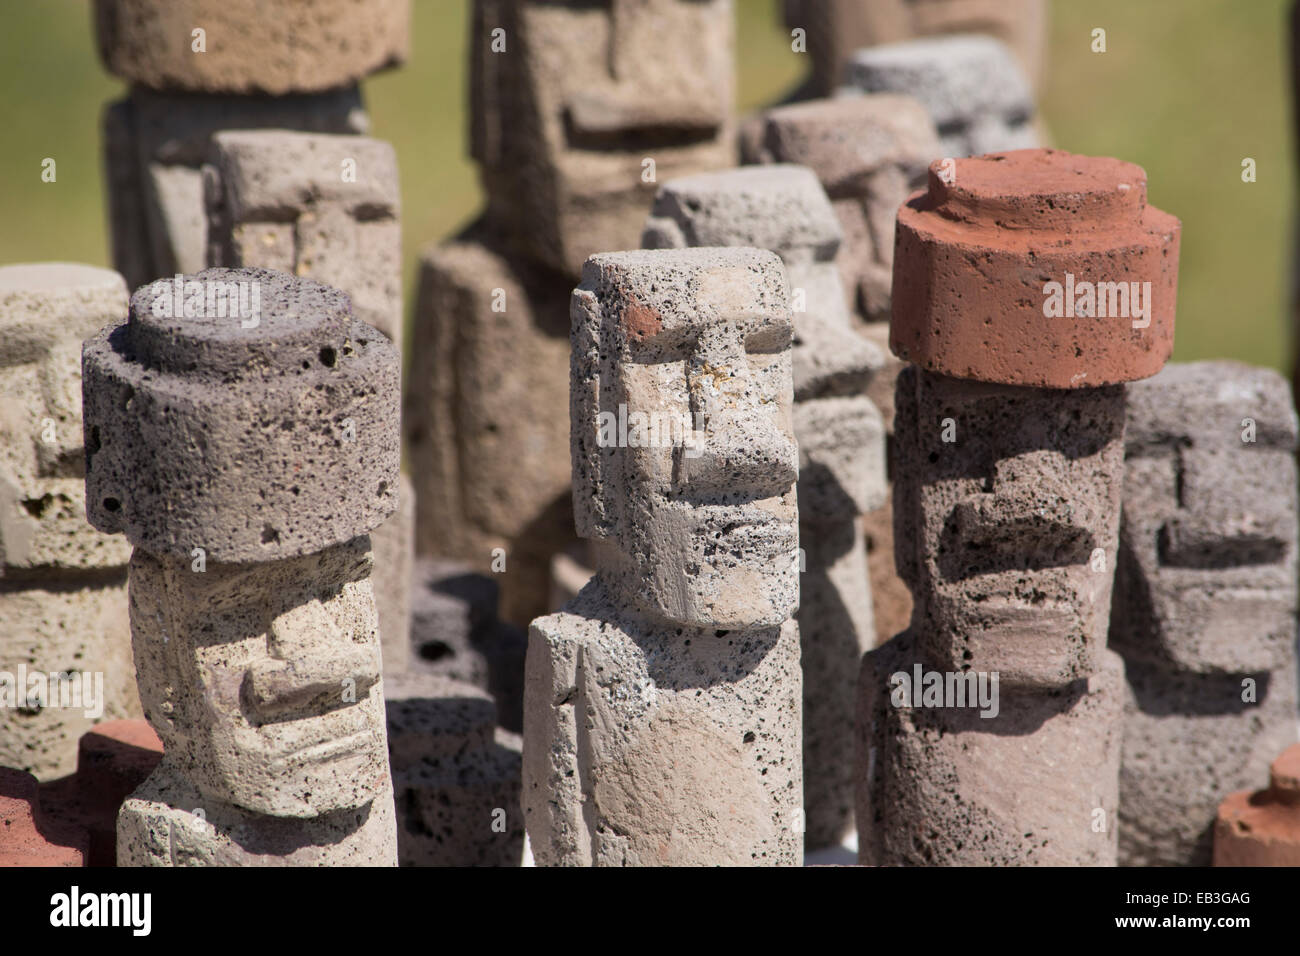 Le Chili, l'île de Pâques ou Rapa Nui. Souvenirs typiques de l'artisanat à vendre autour de l'île. Pierre volcanique sculpté moi les chiffres. Banque D'Images